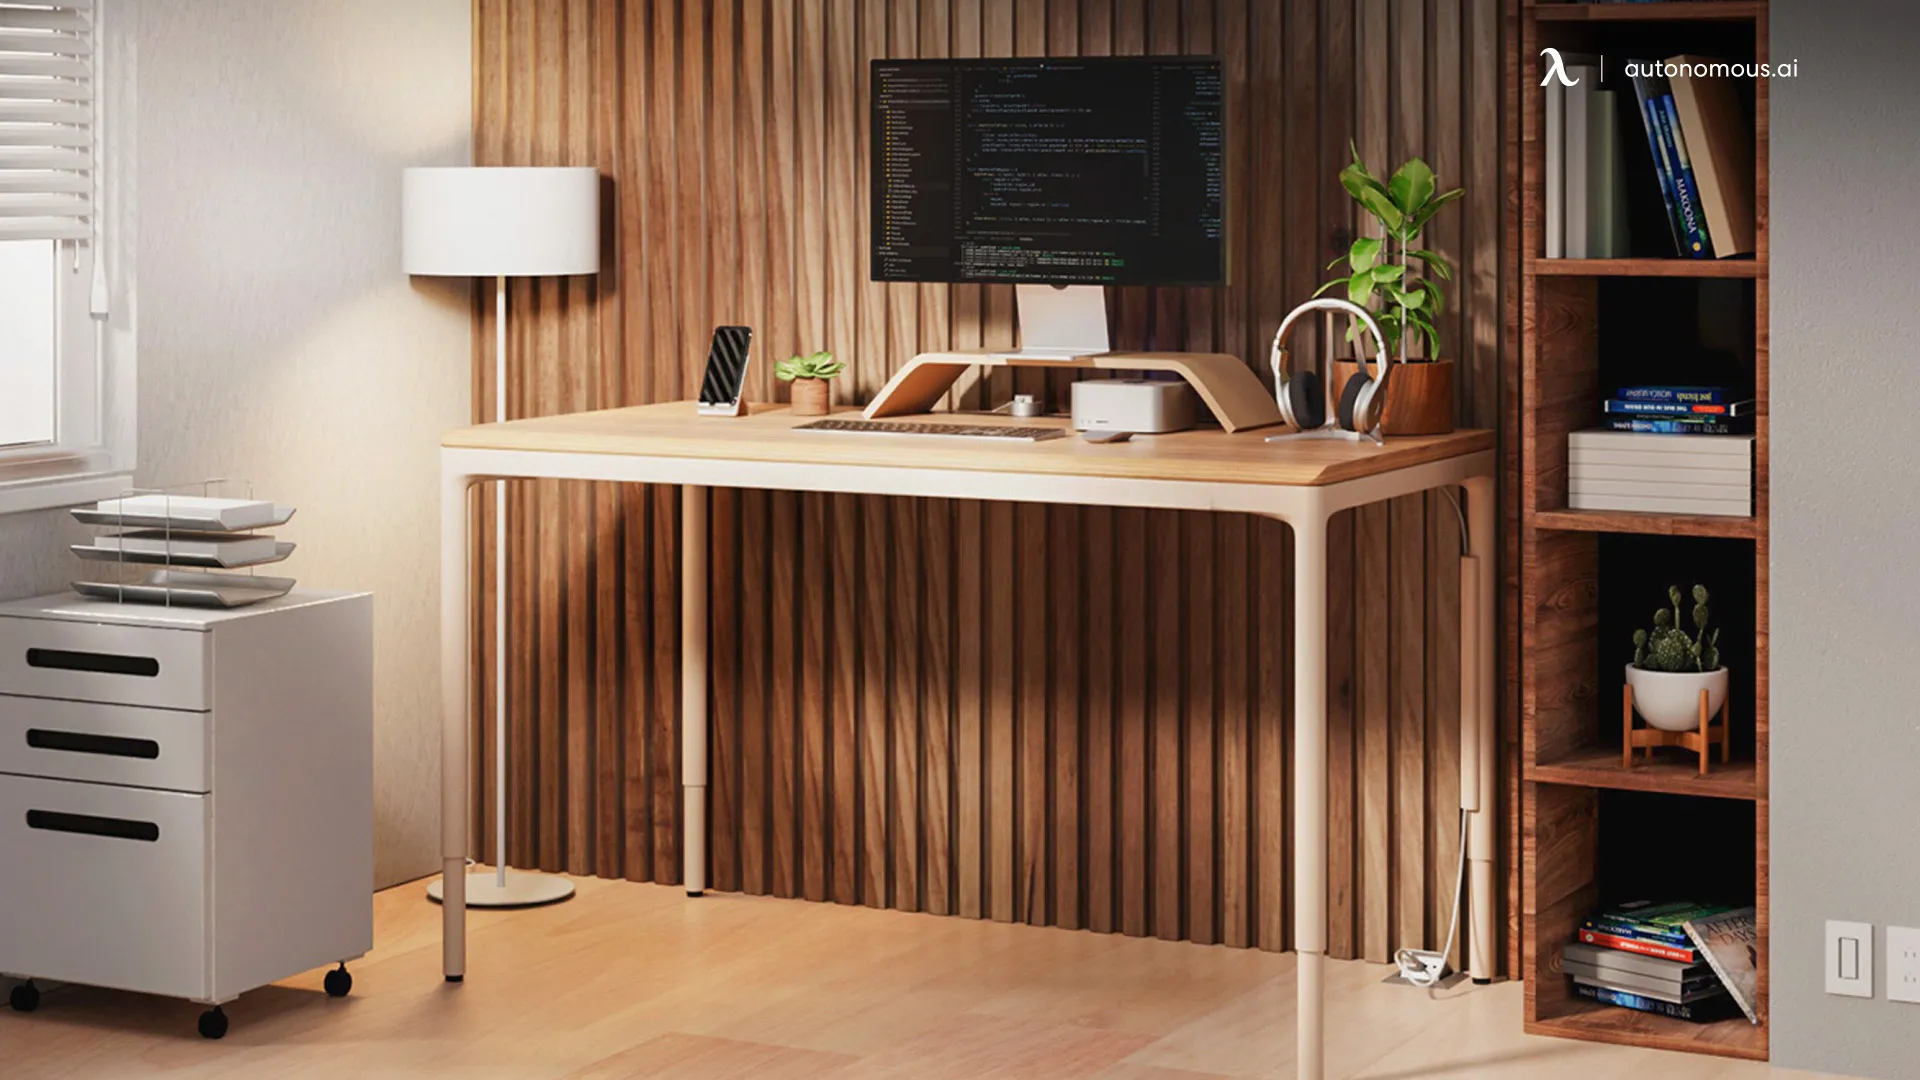 Autonomous - office adjustable table